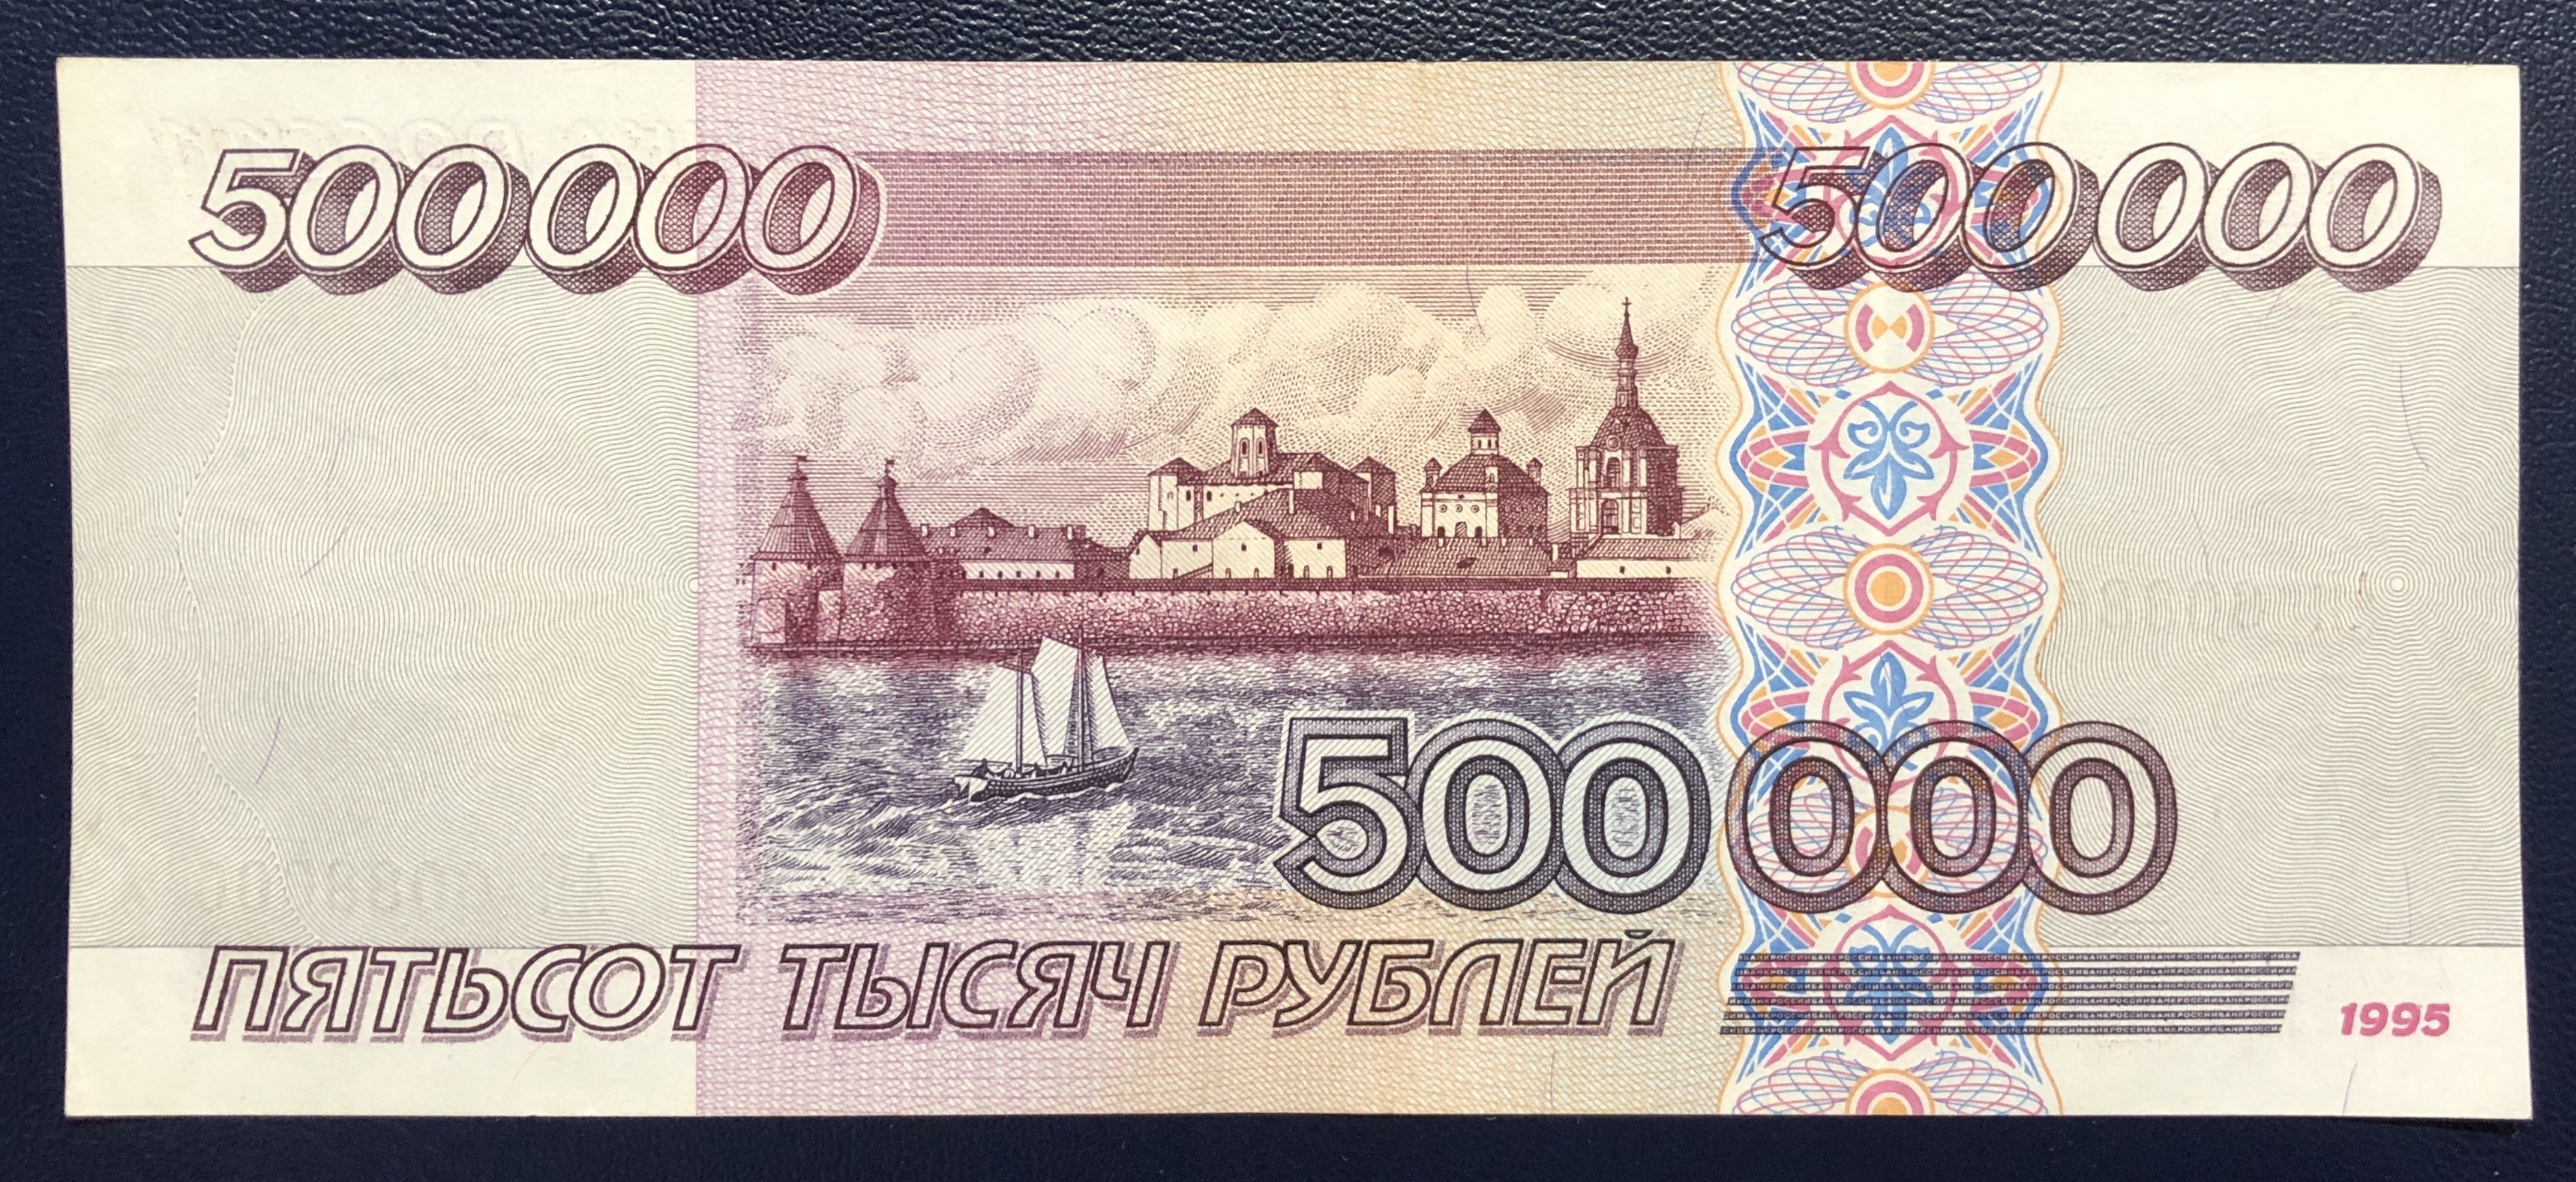 Пятьсот семьдесят рублей. Банкнота 500 рублей 1995. 500000 Рублей. 500 000 Рублей купюра. 500000 Рублей 1995.